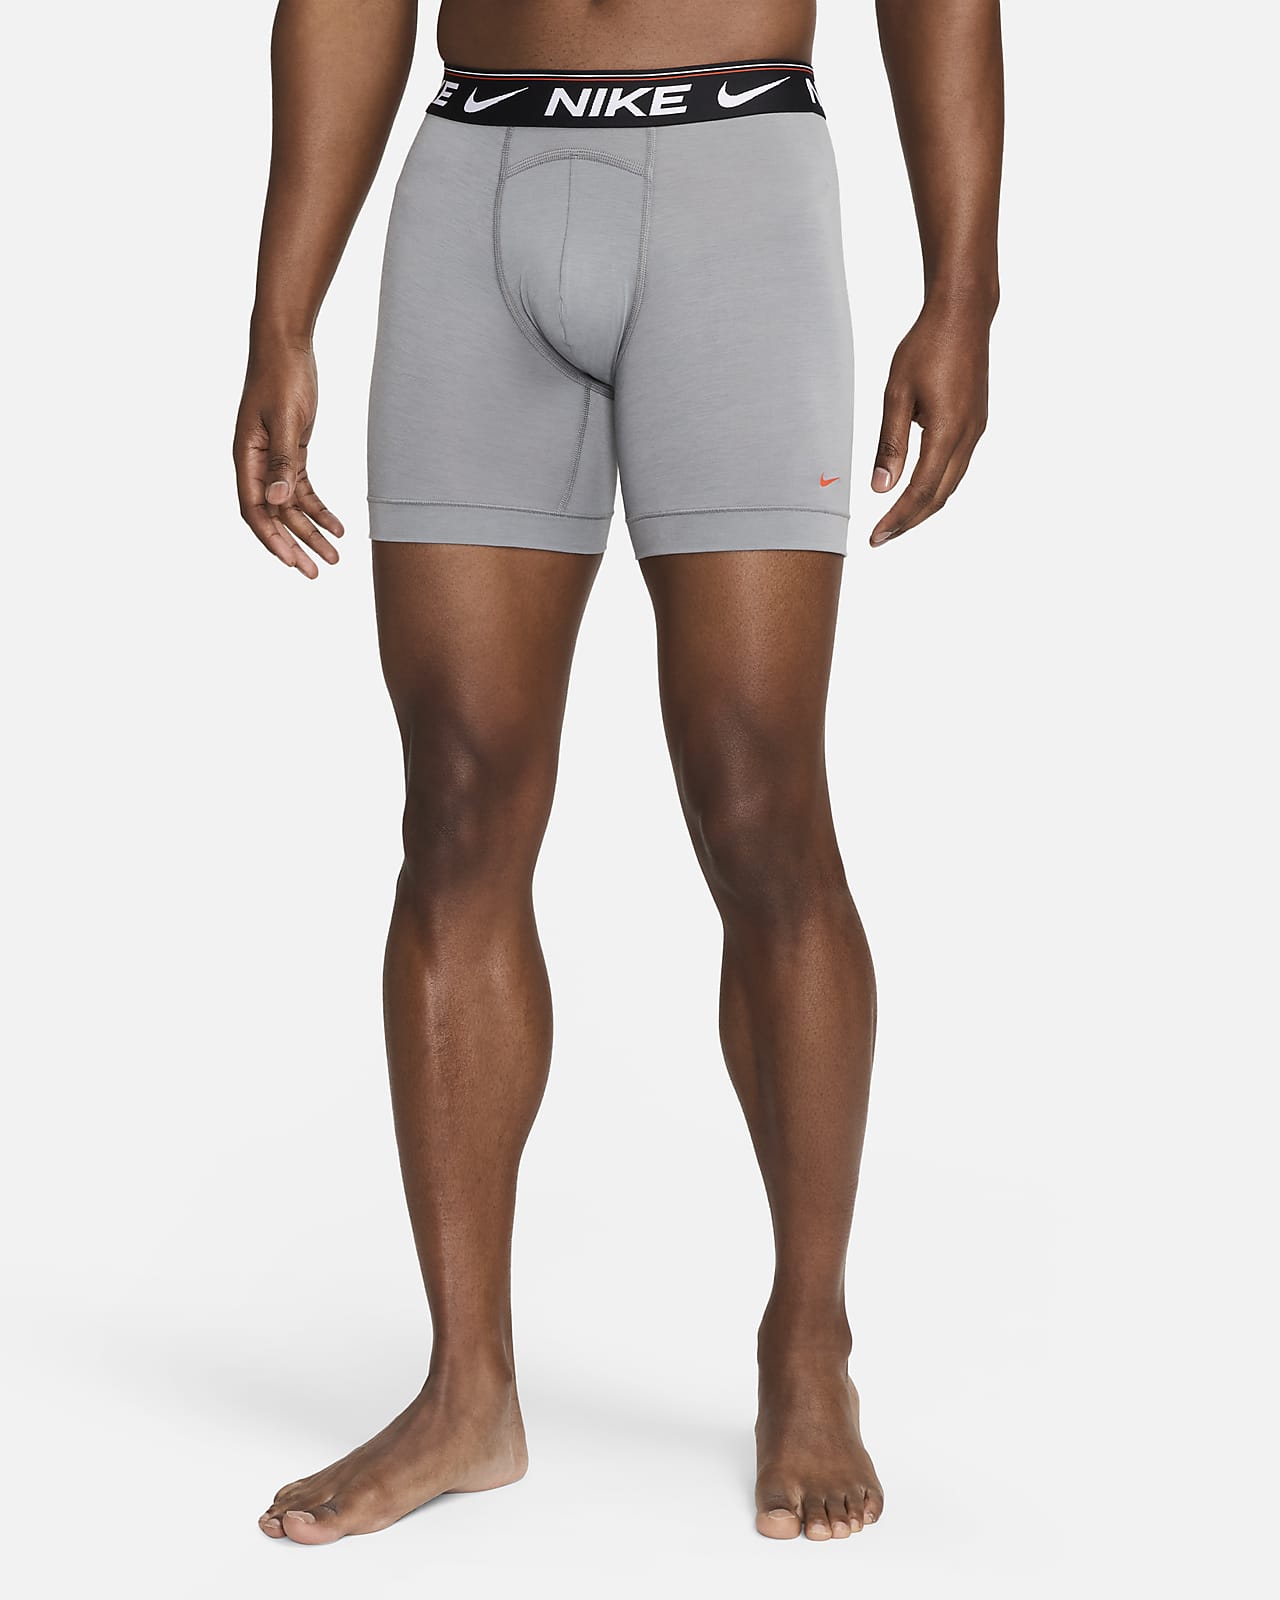 Nike Dri-FIT Ultra Comfort Men's Boxer Briefs (3-Pack).